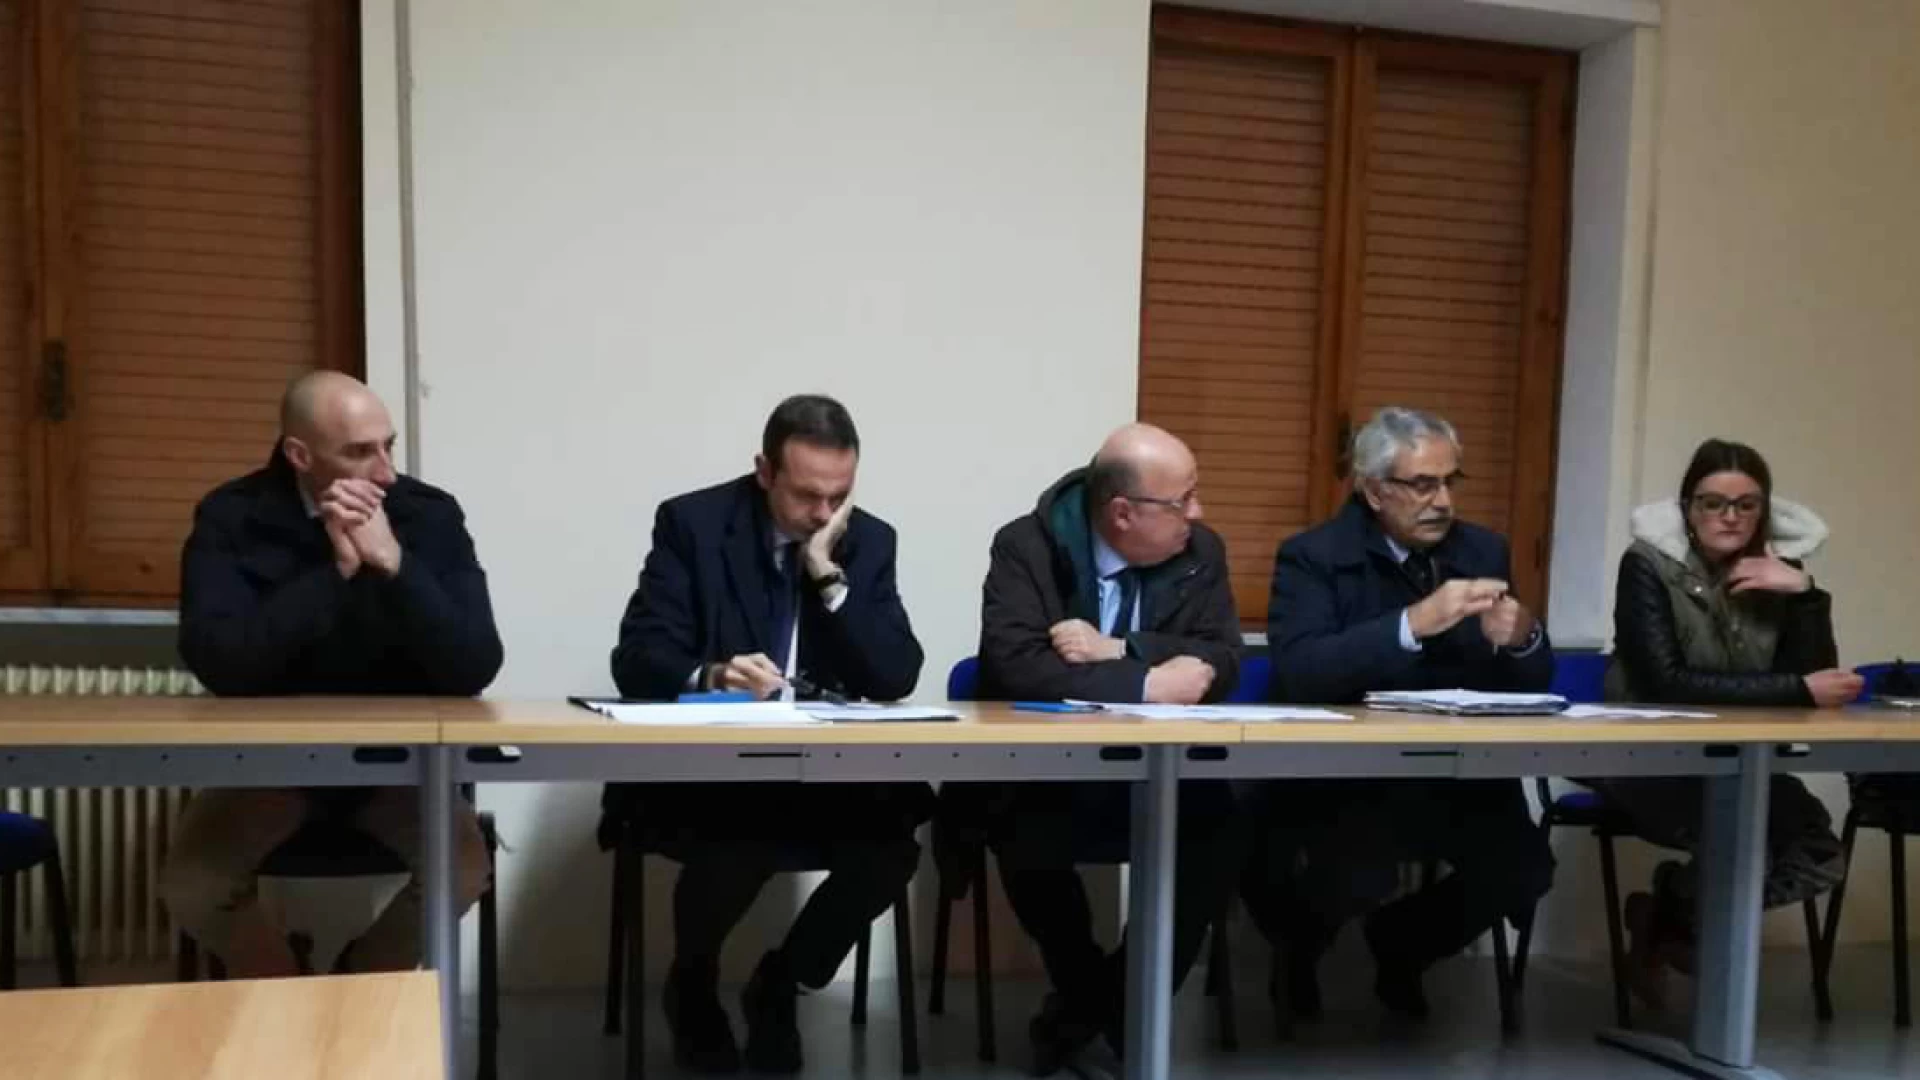 Strategia Nazionale Aree interne-Area interna Mainarde-riunione a Campobasso nella sede della Regione Molise.